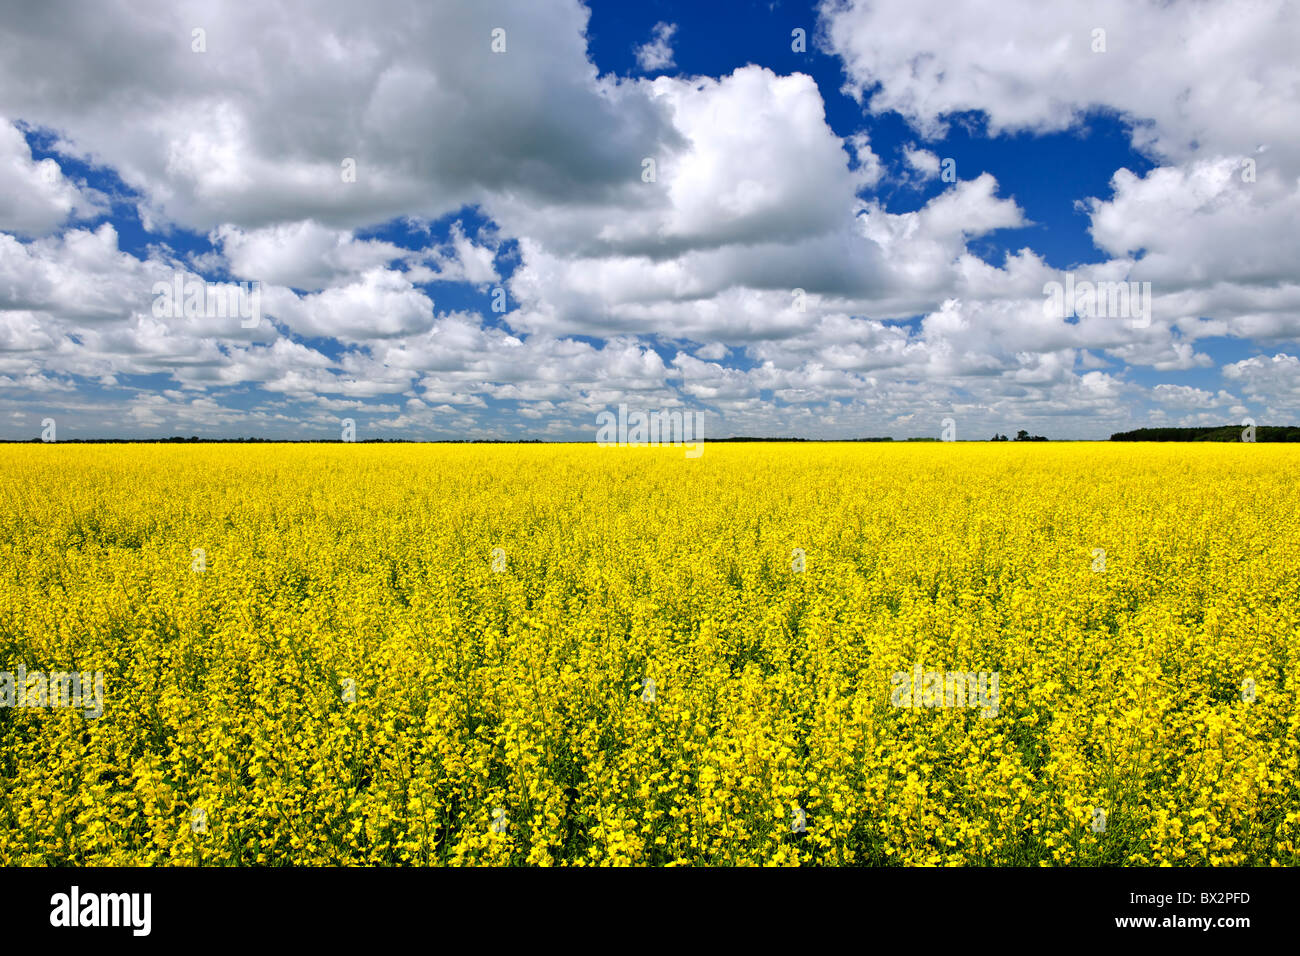 Paysage agricole de canola ou colza champ agricole au Manitoba, Canada Banque D'Images